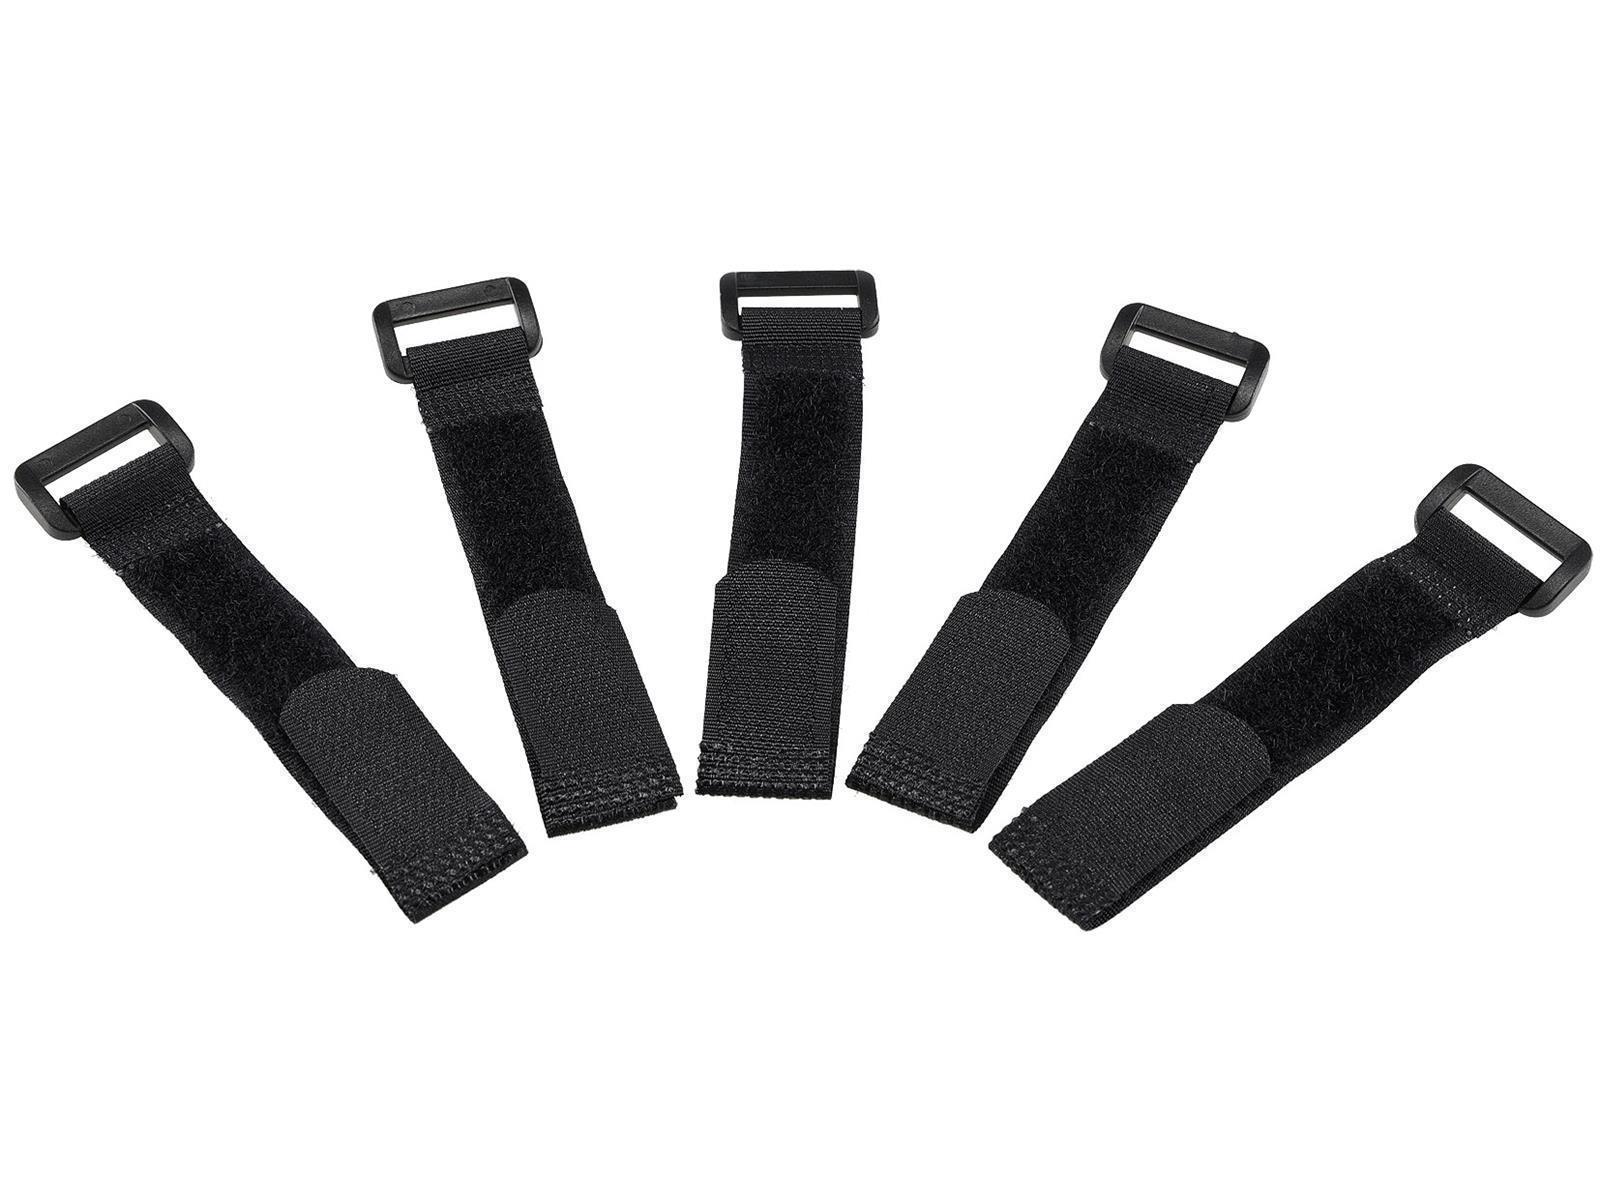 Klettband mit Öse, 5er Pack15x2cm, schwarz